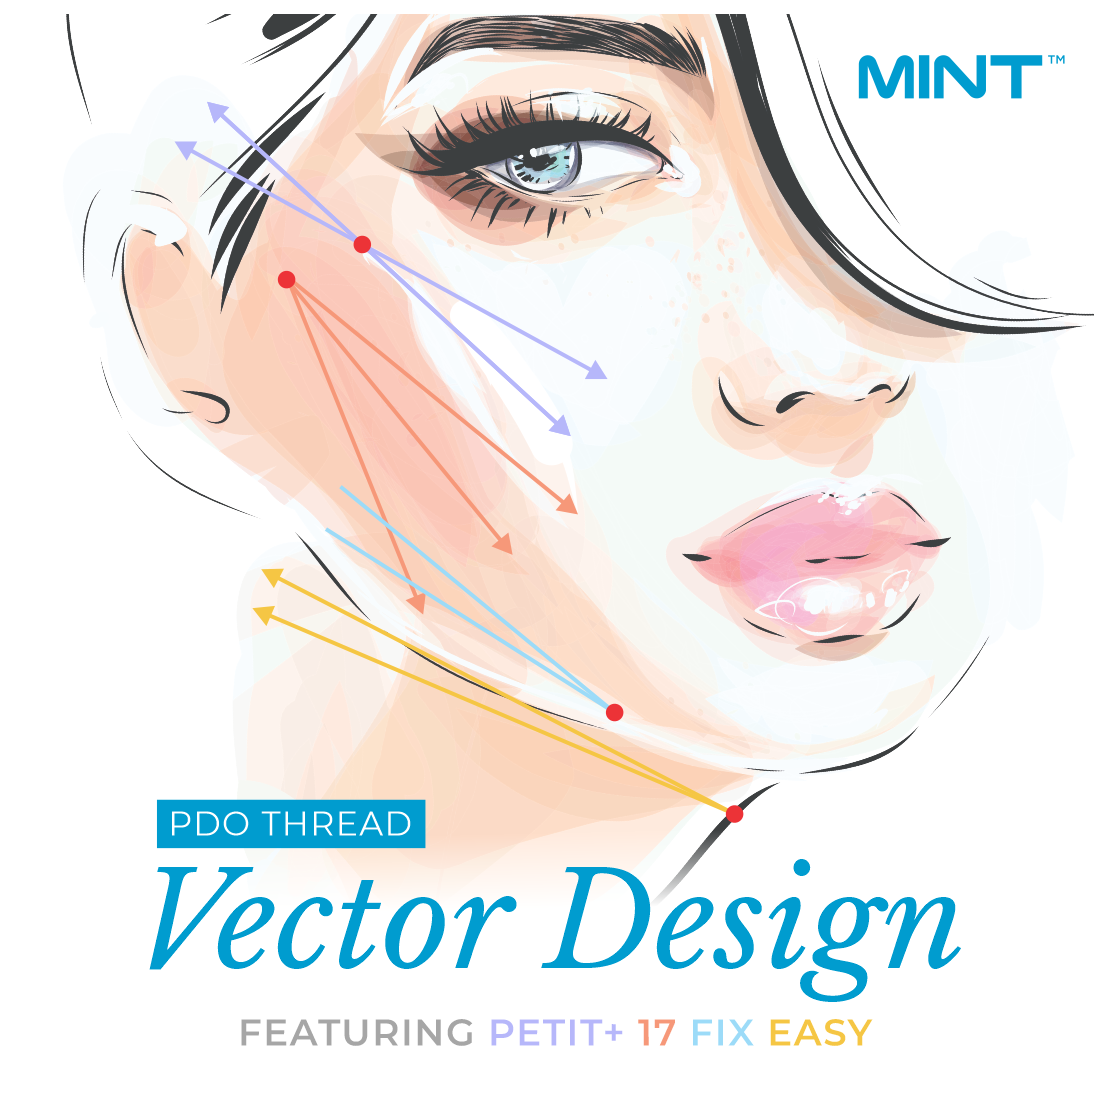 MINT PDO Thread Lift Vector Design